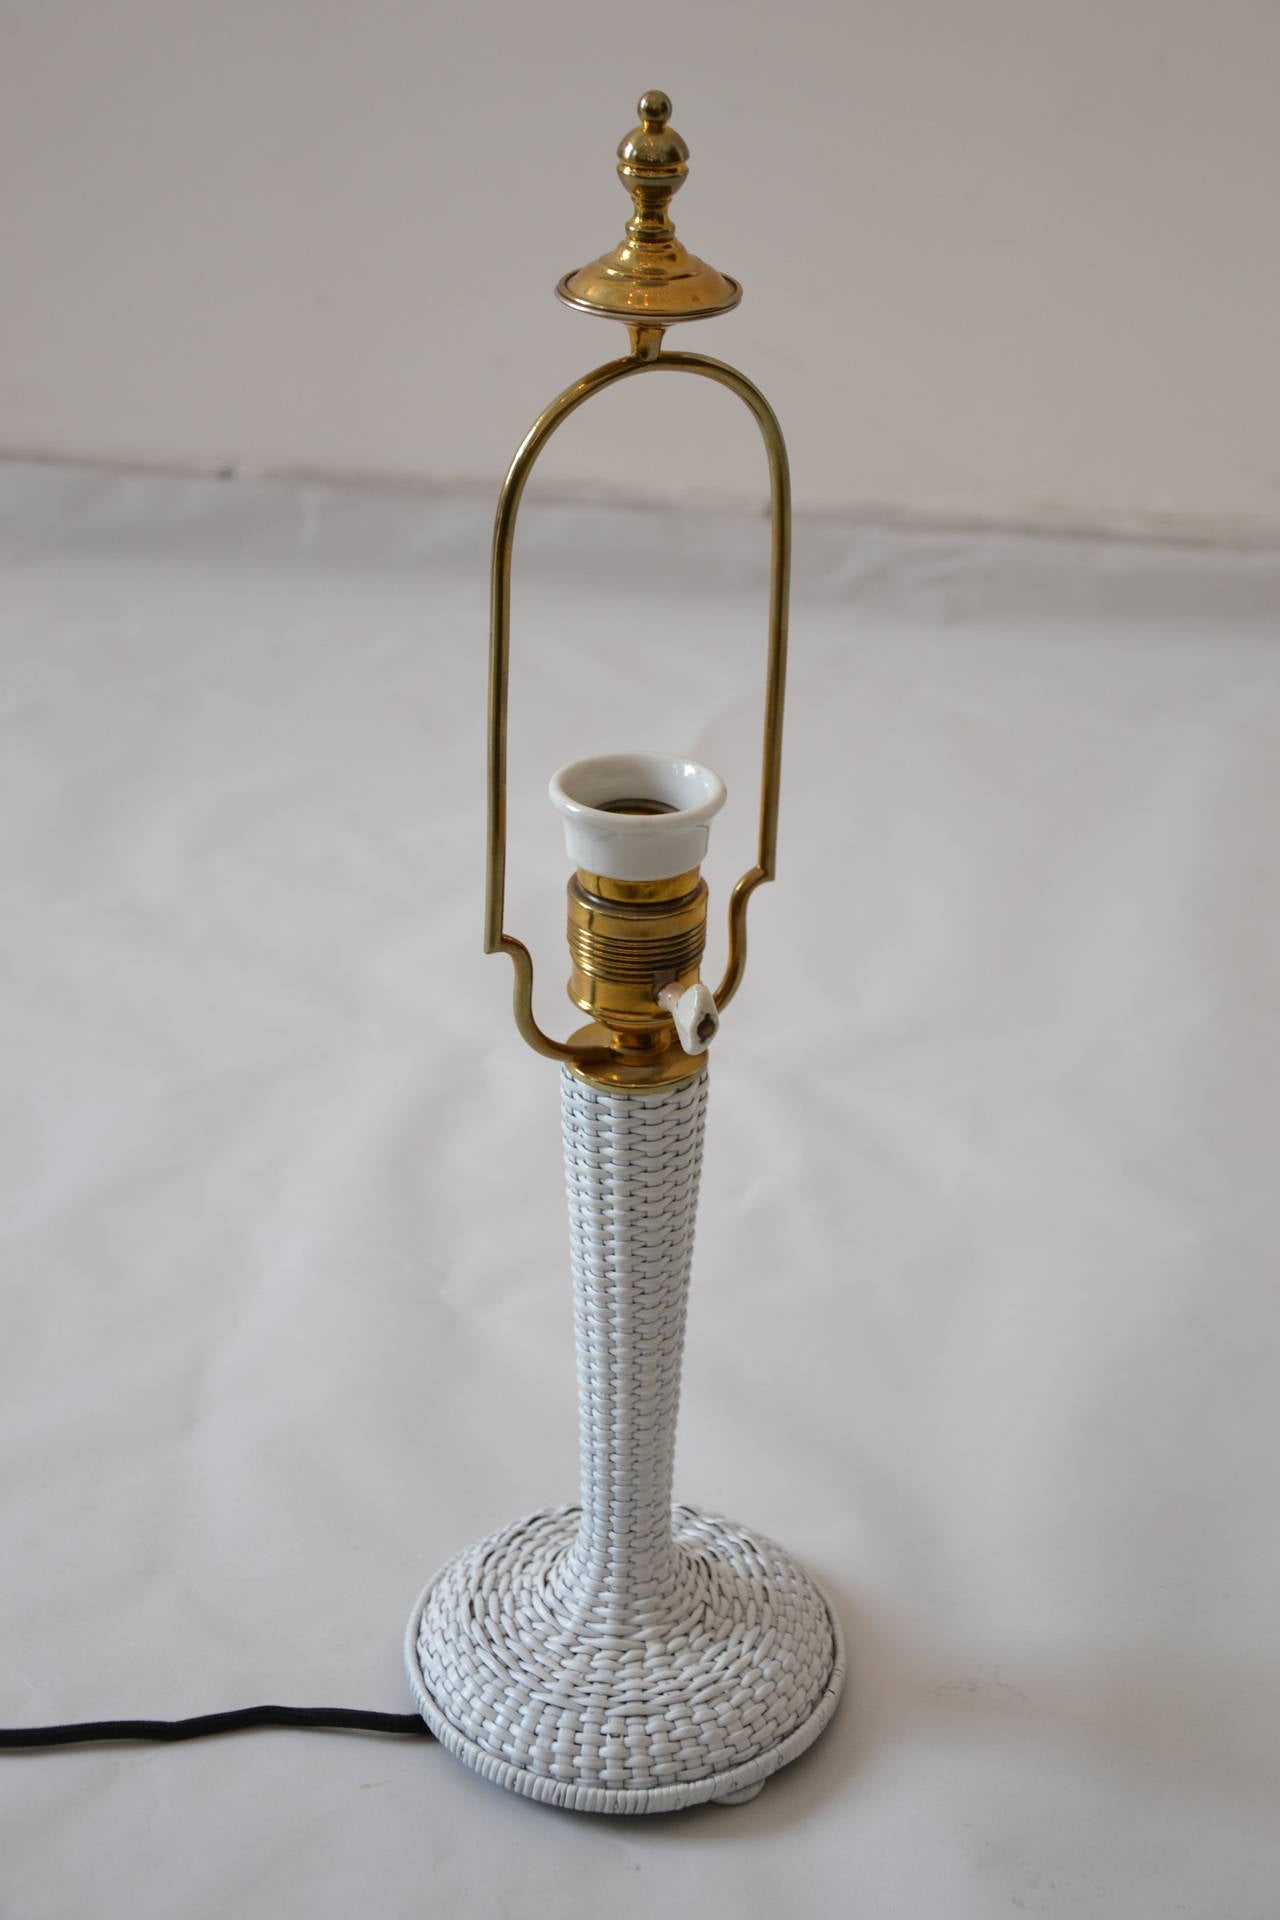 Prag-Rudniker Table Lamp
Original condition